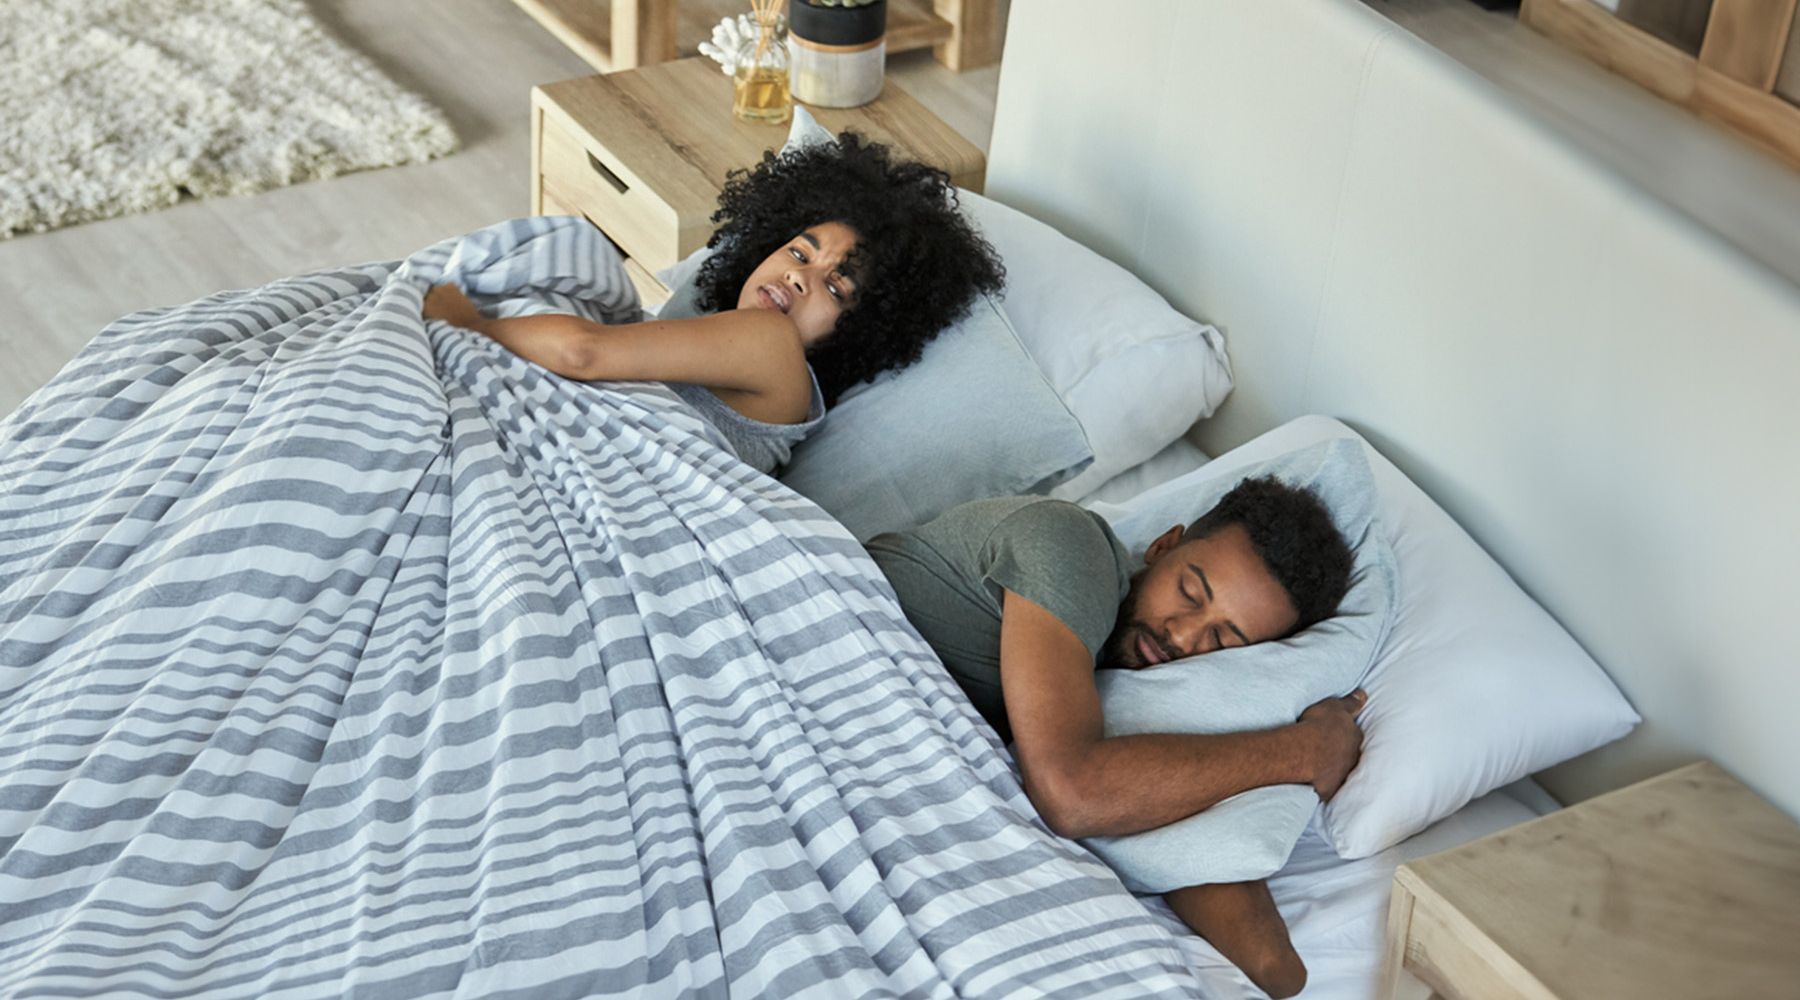 The Sleep Again Pillow System 